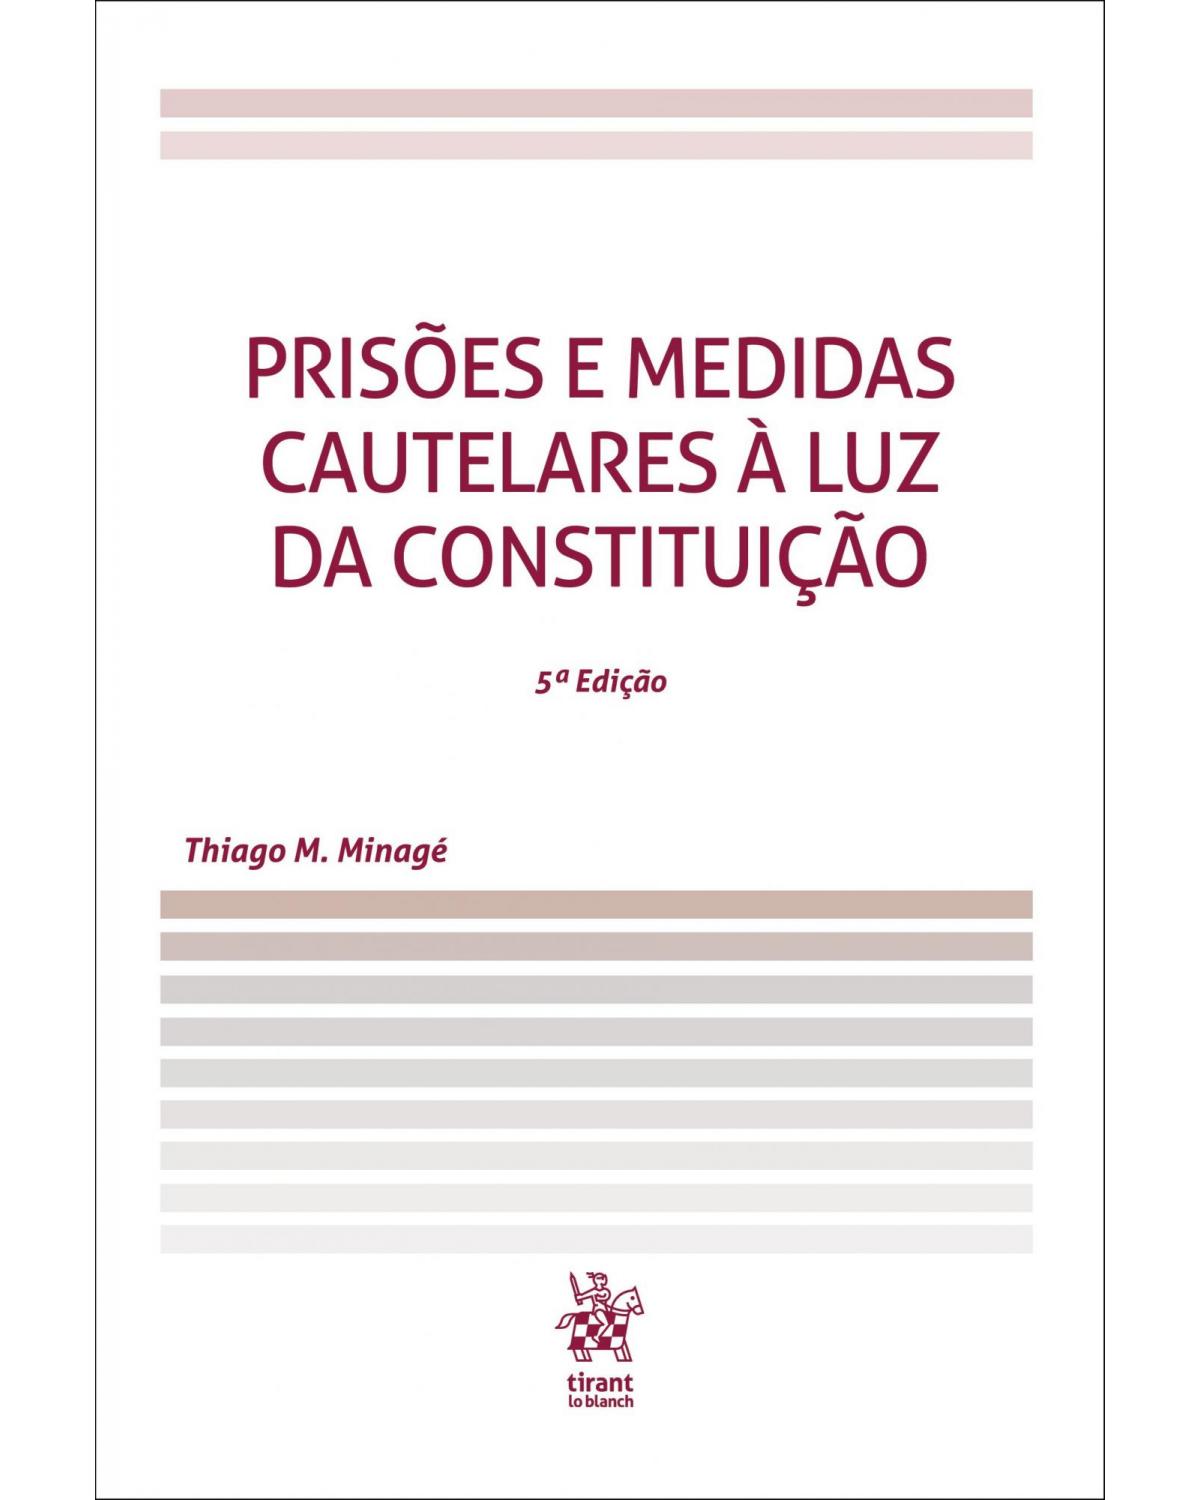 Prisões e medidas cautelares à luz da constituição - 5ª Edição | 2019